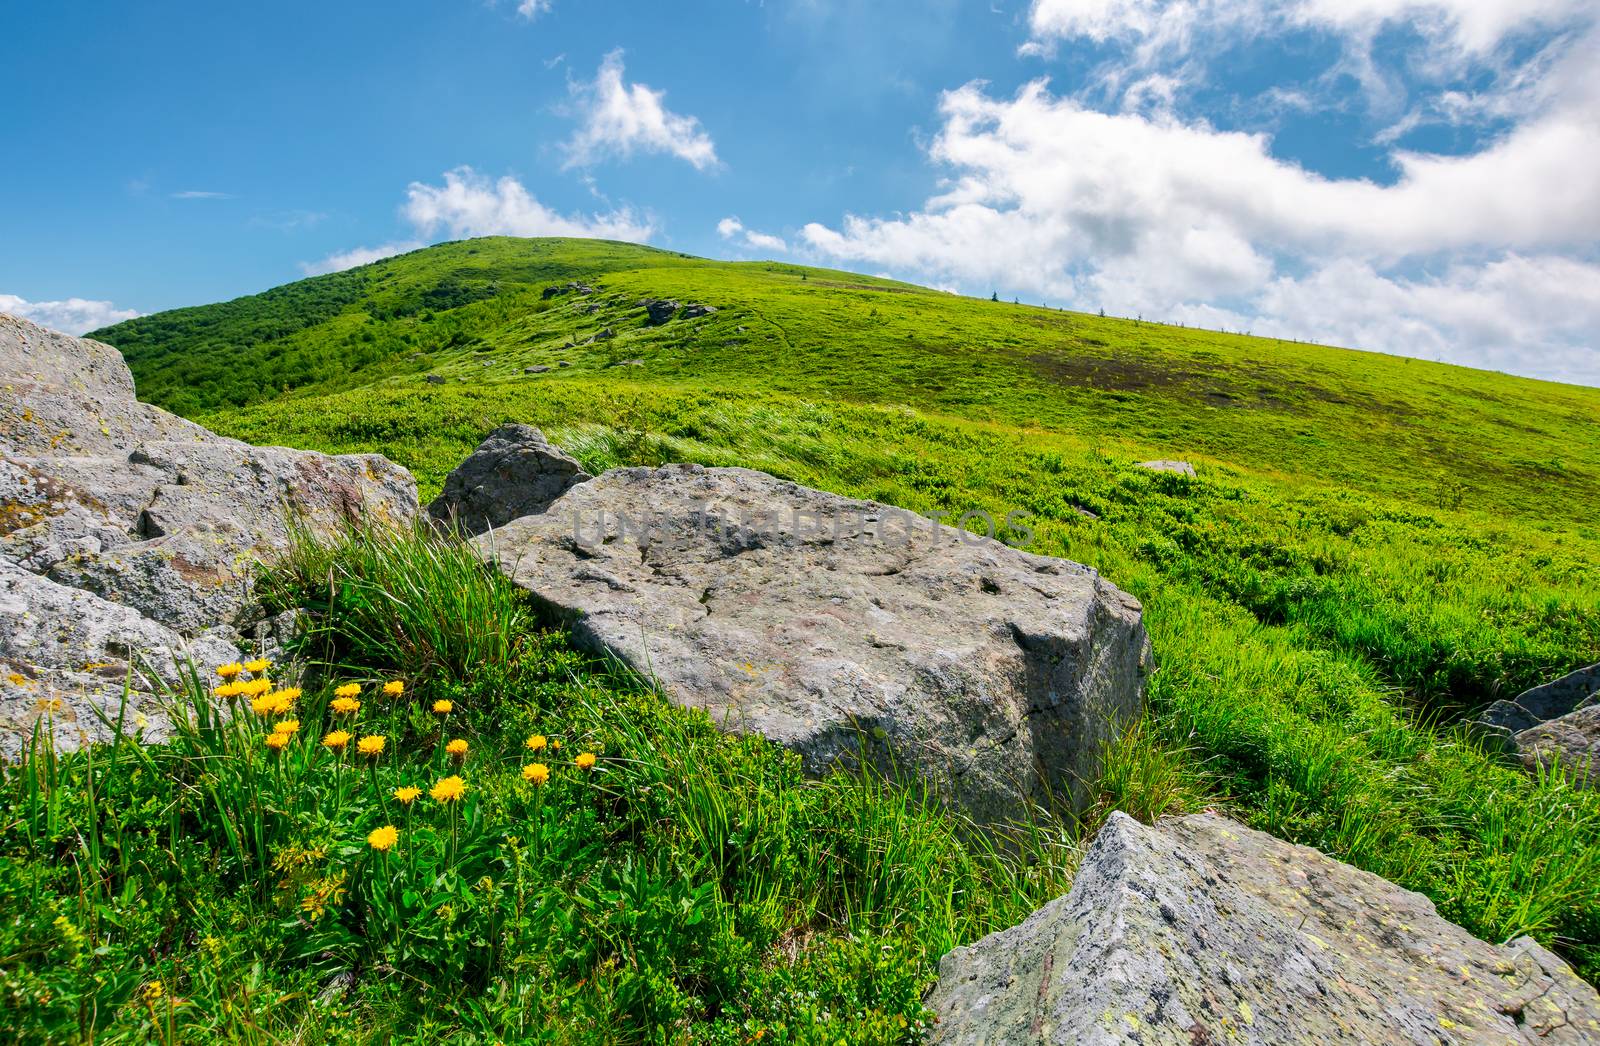 boulder around dandelions on grassy hillside by Pellinni